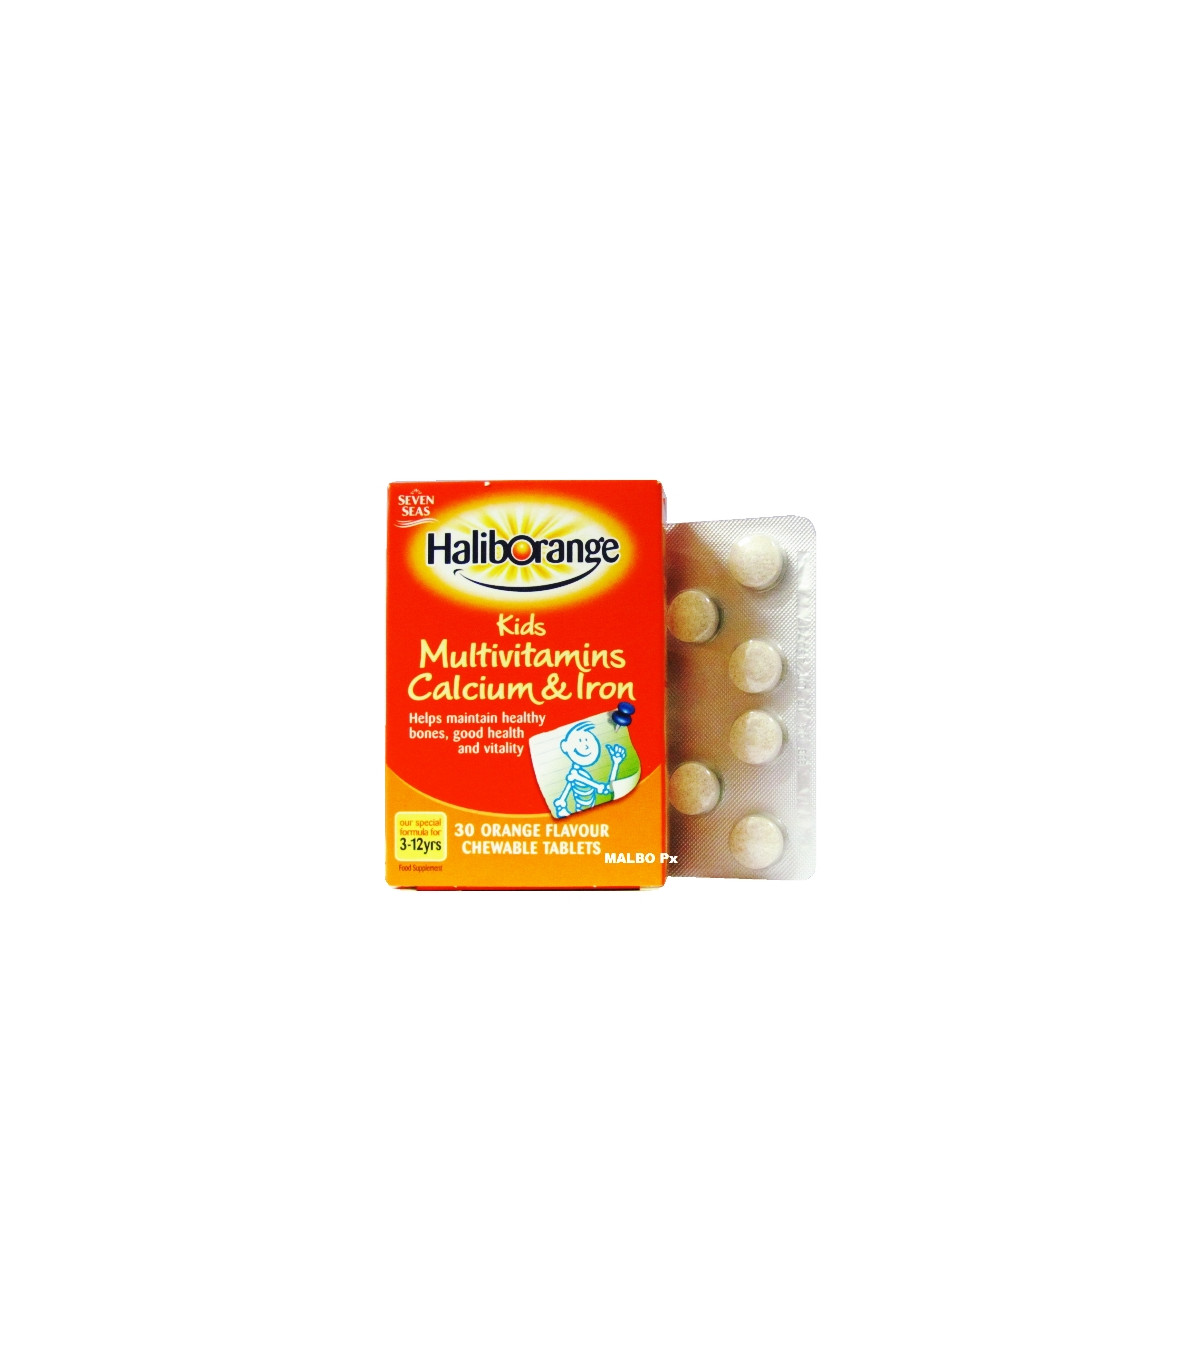 Haliborange Kids Multivitamins Calcium & Iron - 30 Tablets